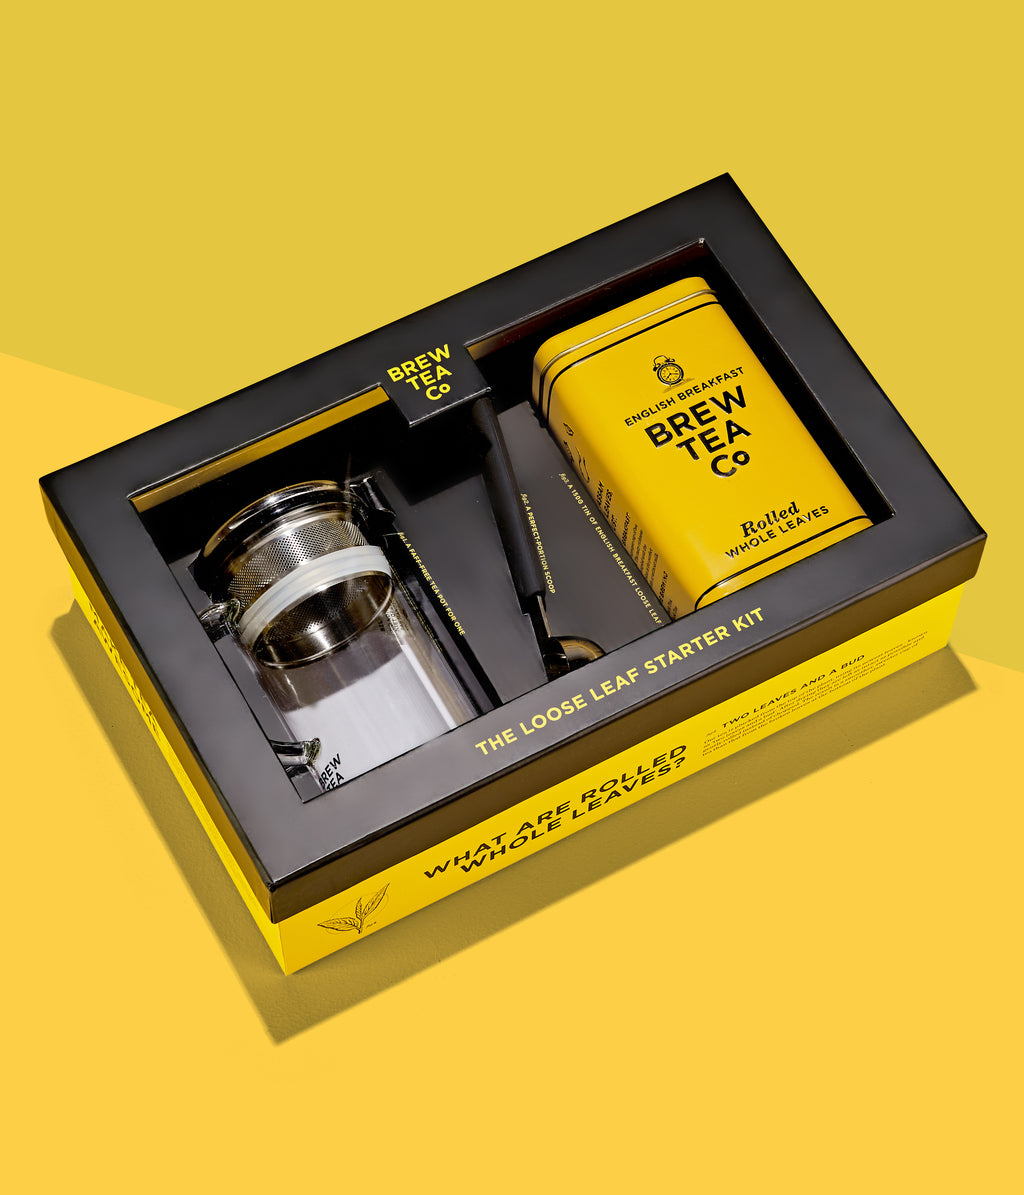 Loose Leaf Starter Kit, Tea gift Set